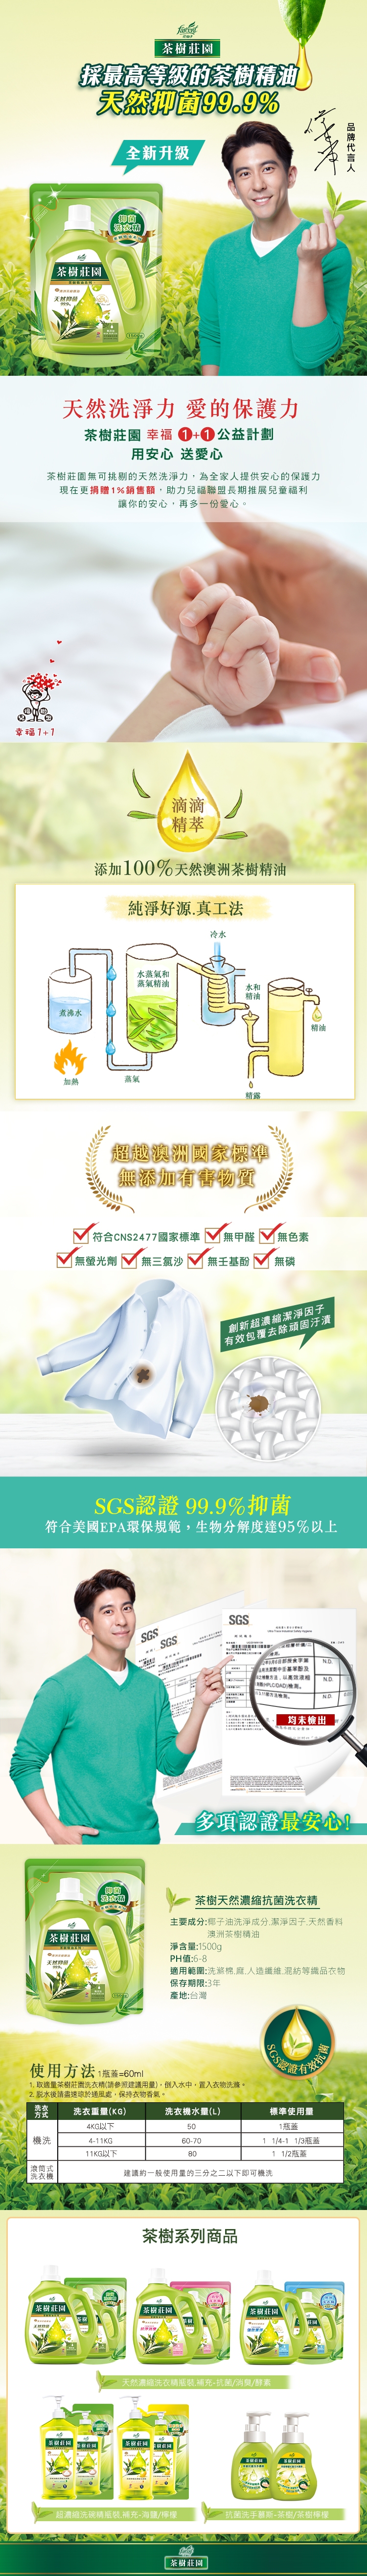 茶樹莊園 茶樹天然濃縮抗菌洗衣精補充包 1500g(6入/箱~箱購)